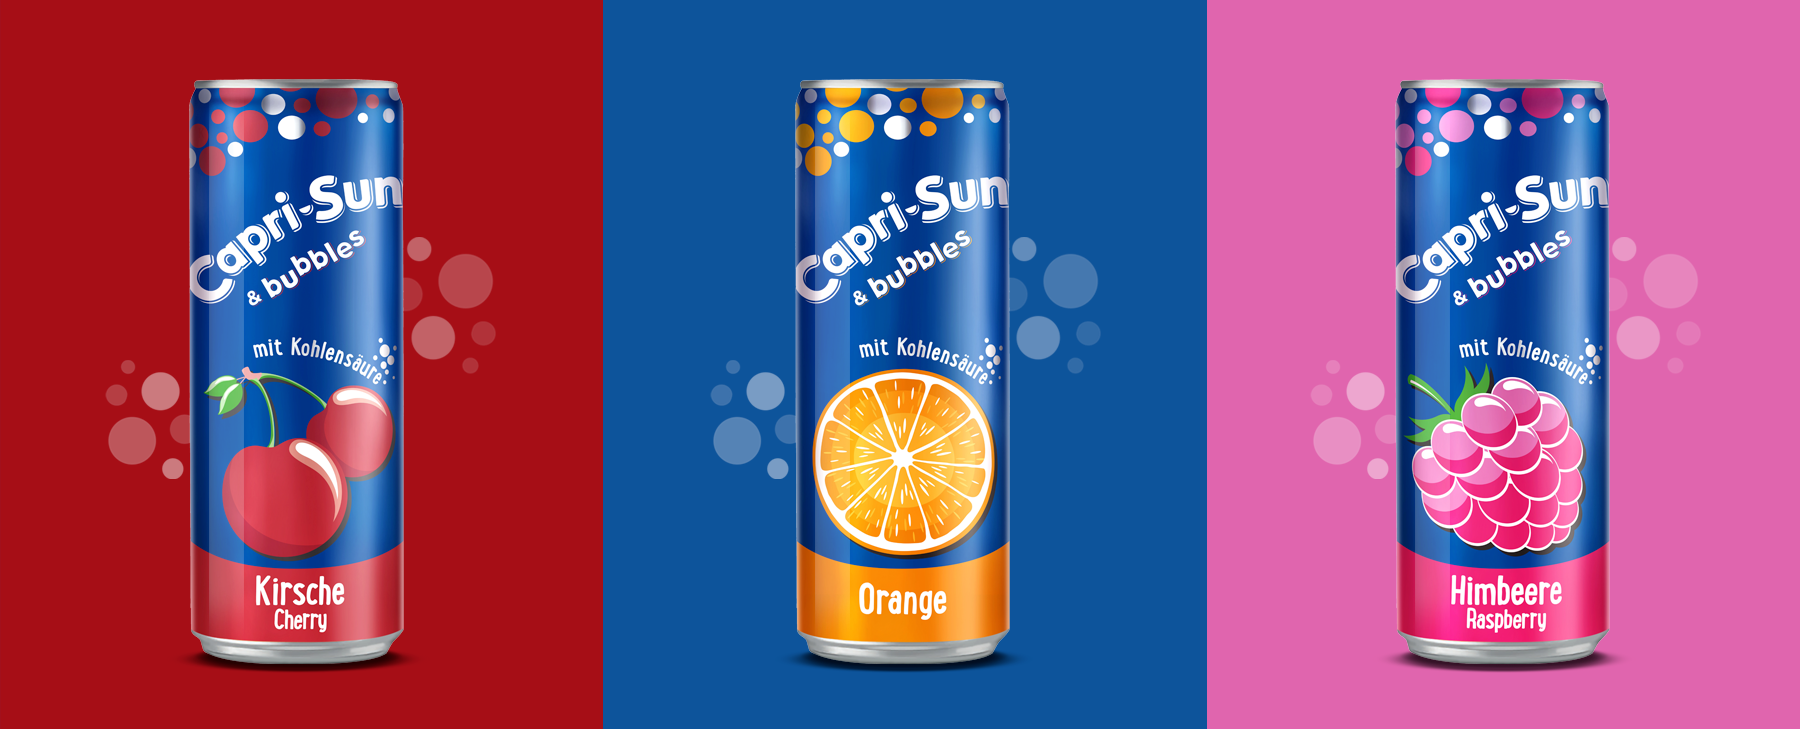 Capri Sun And Bubbles Orange Can Drink